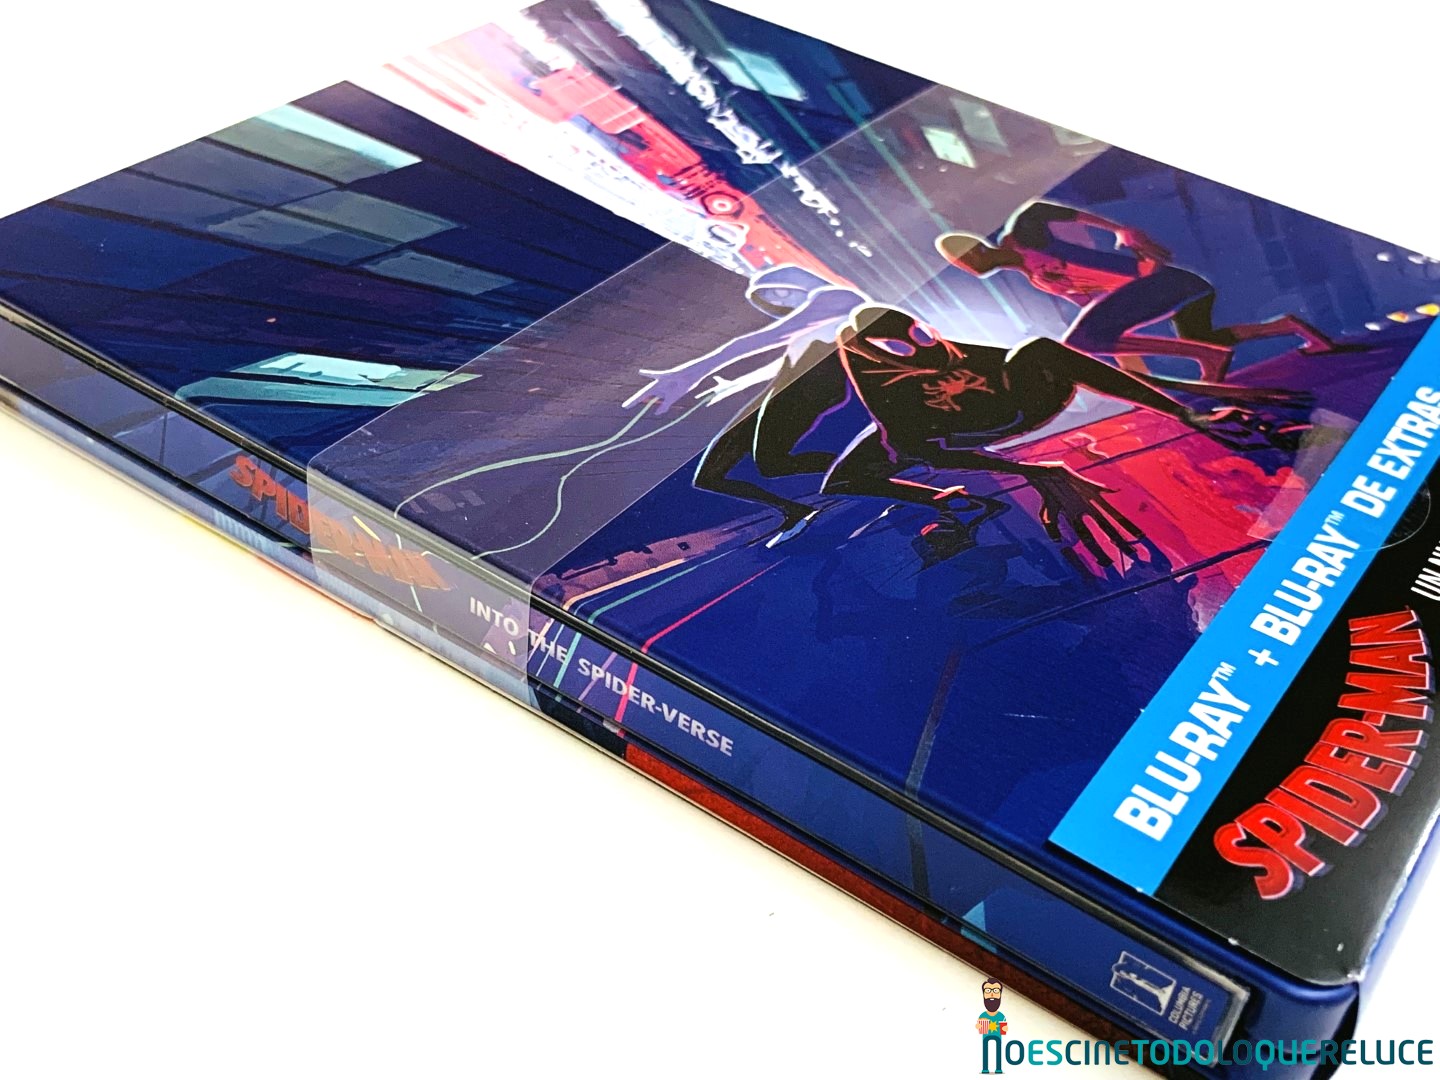 Spider-Man: Un nuevo Universo': Reportaje fotográfico y análisis de la  edición metálica (Blu-ray + BD Extras + Artbook)